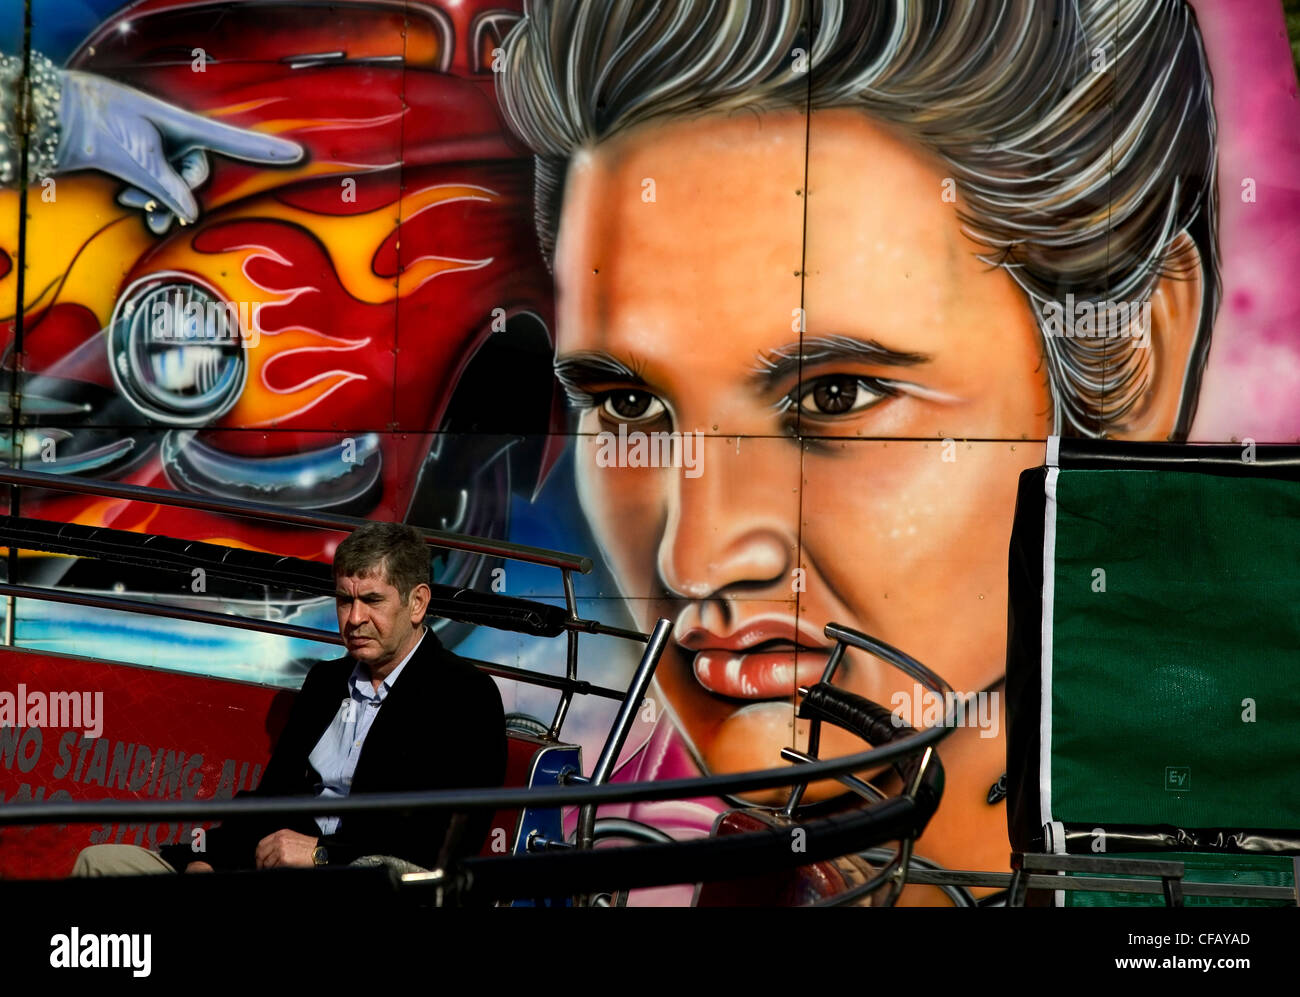 Festplatz am Hampstead Heath, London. Mann sitzt auf der Bank vor Wand Wandbild mit Gesicht von Elvis Presley und Auto Stockfoto